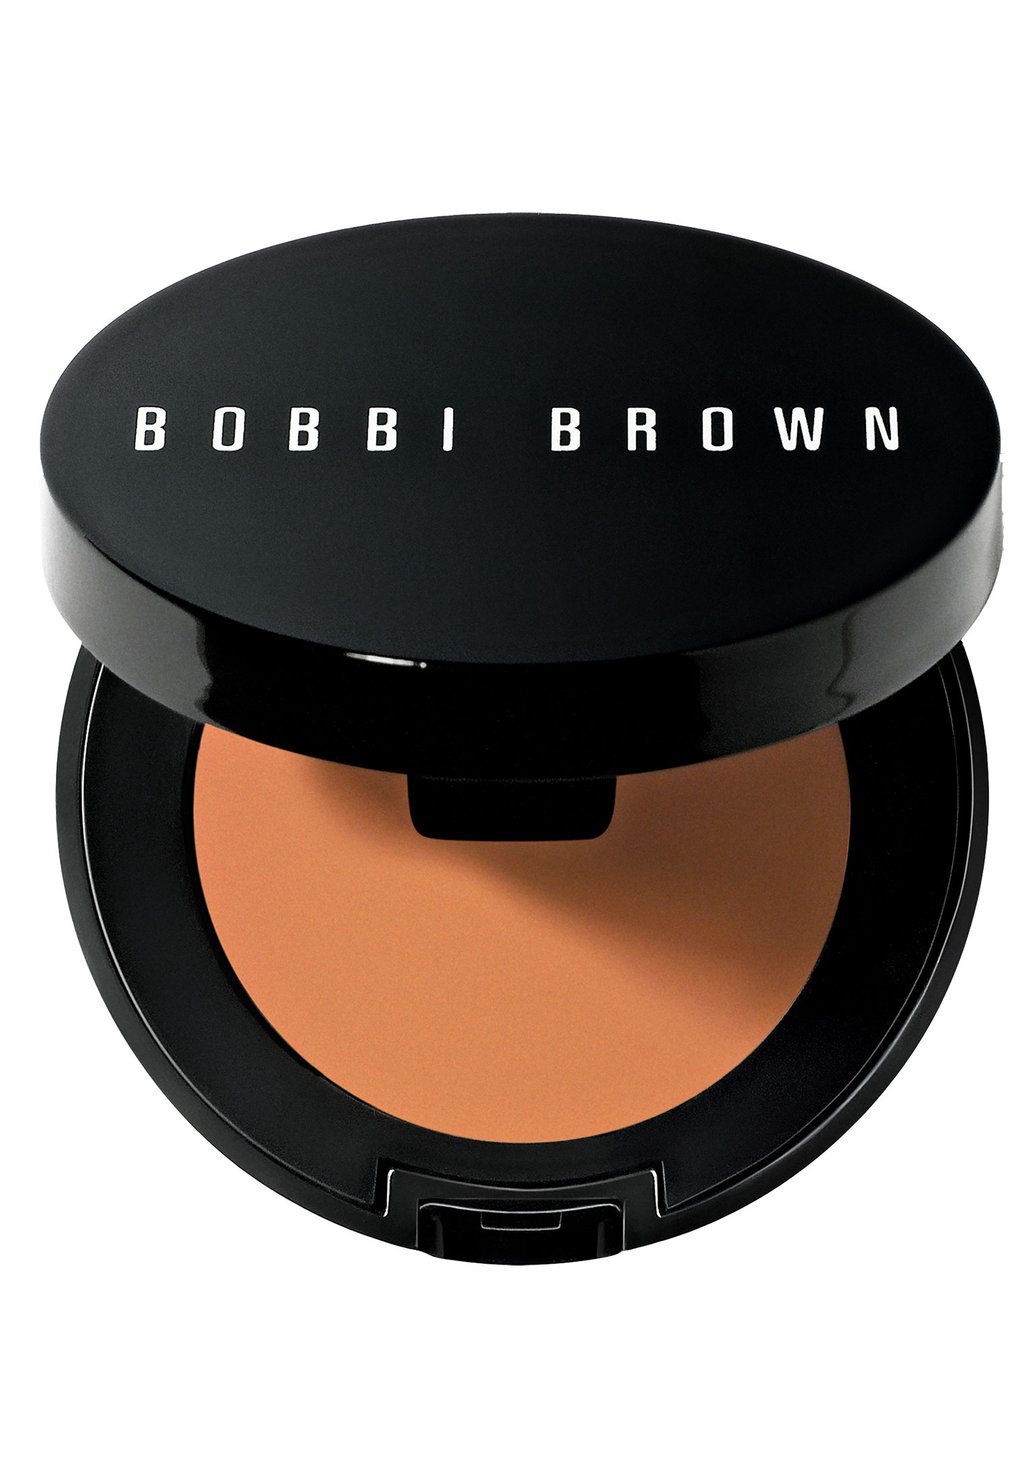 Консилер Corrector Bobbi Brown, цвет dark peach консилер skin corrector stick bobbi brown цвет rich peach